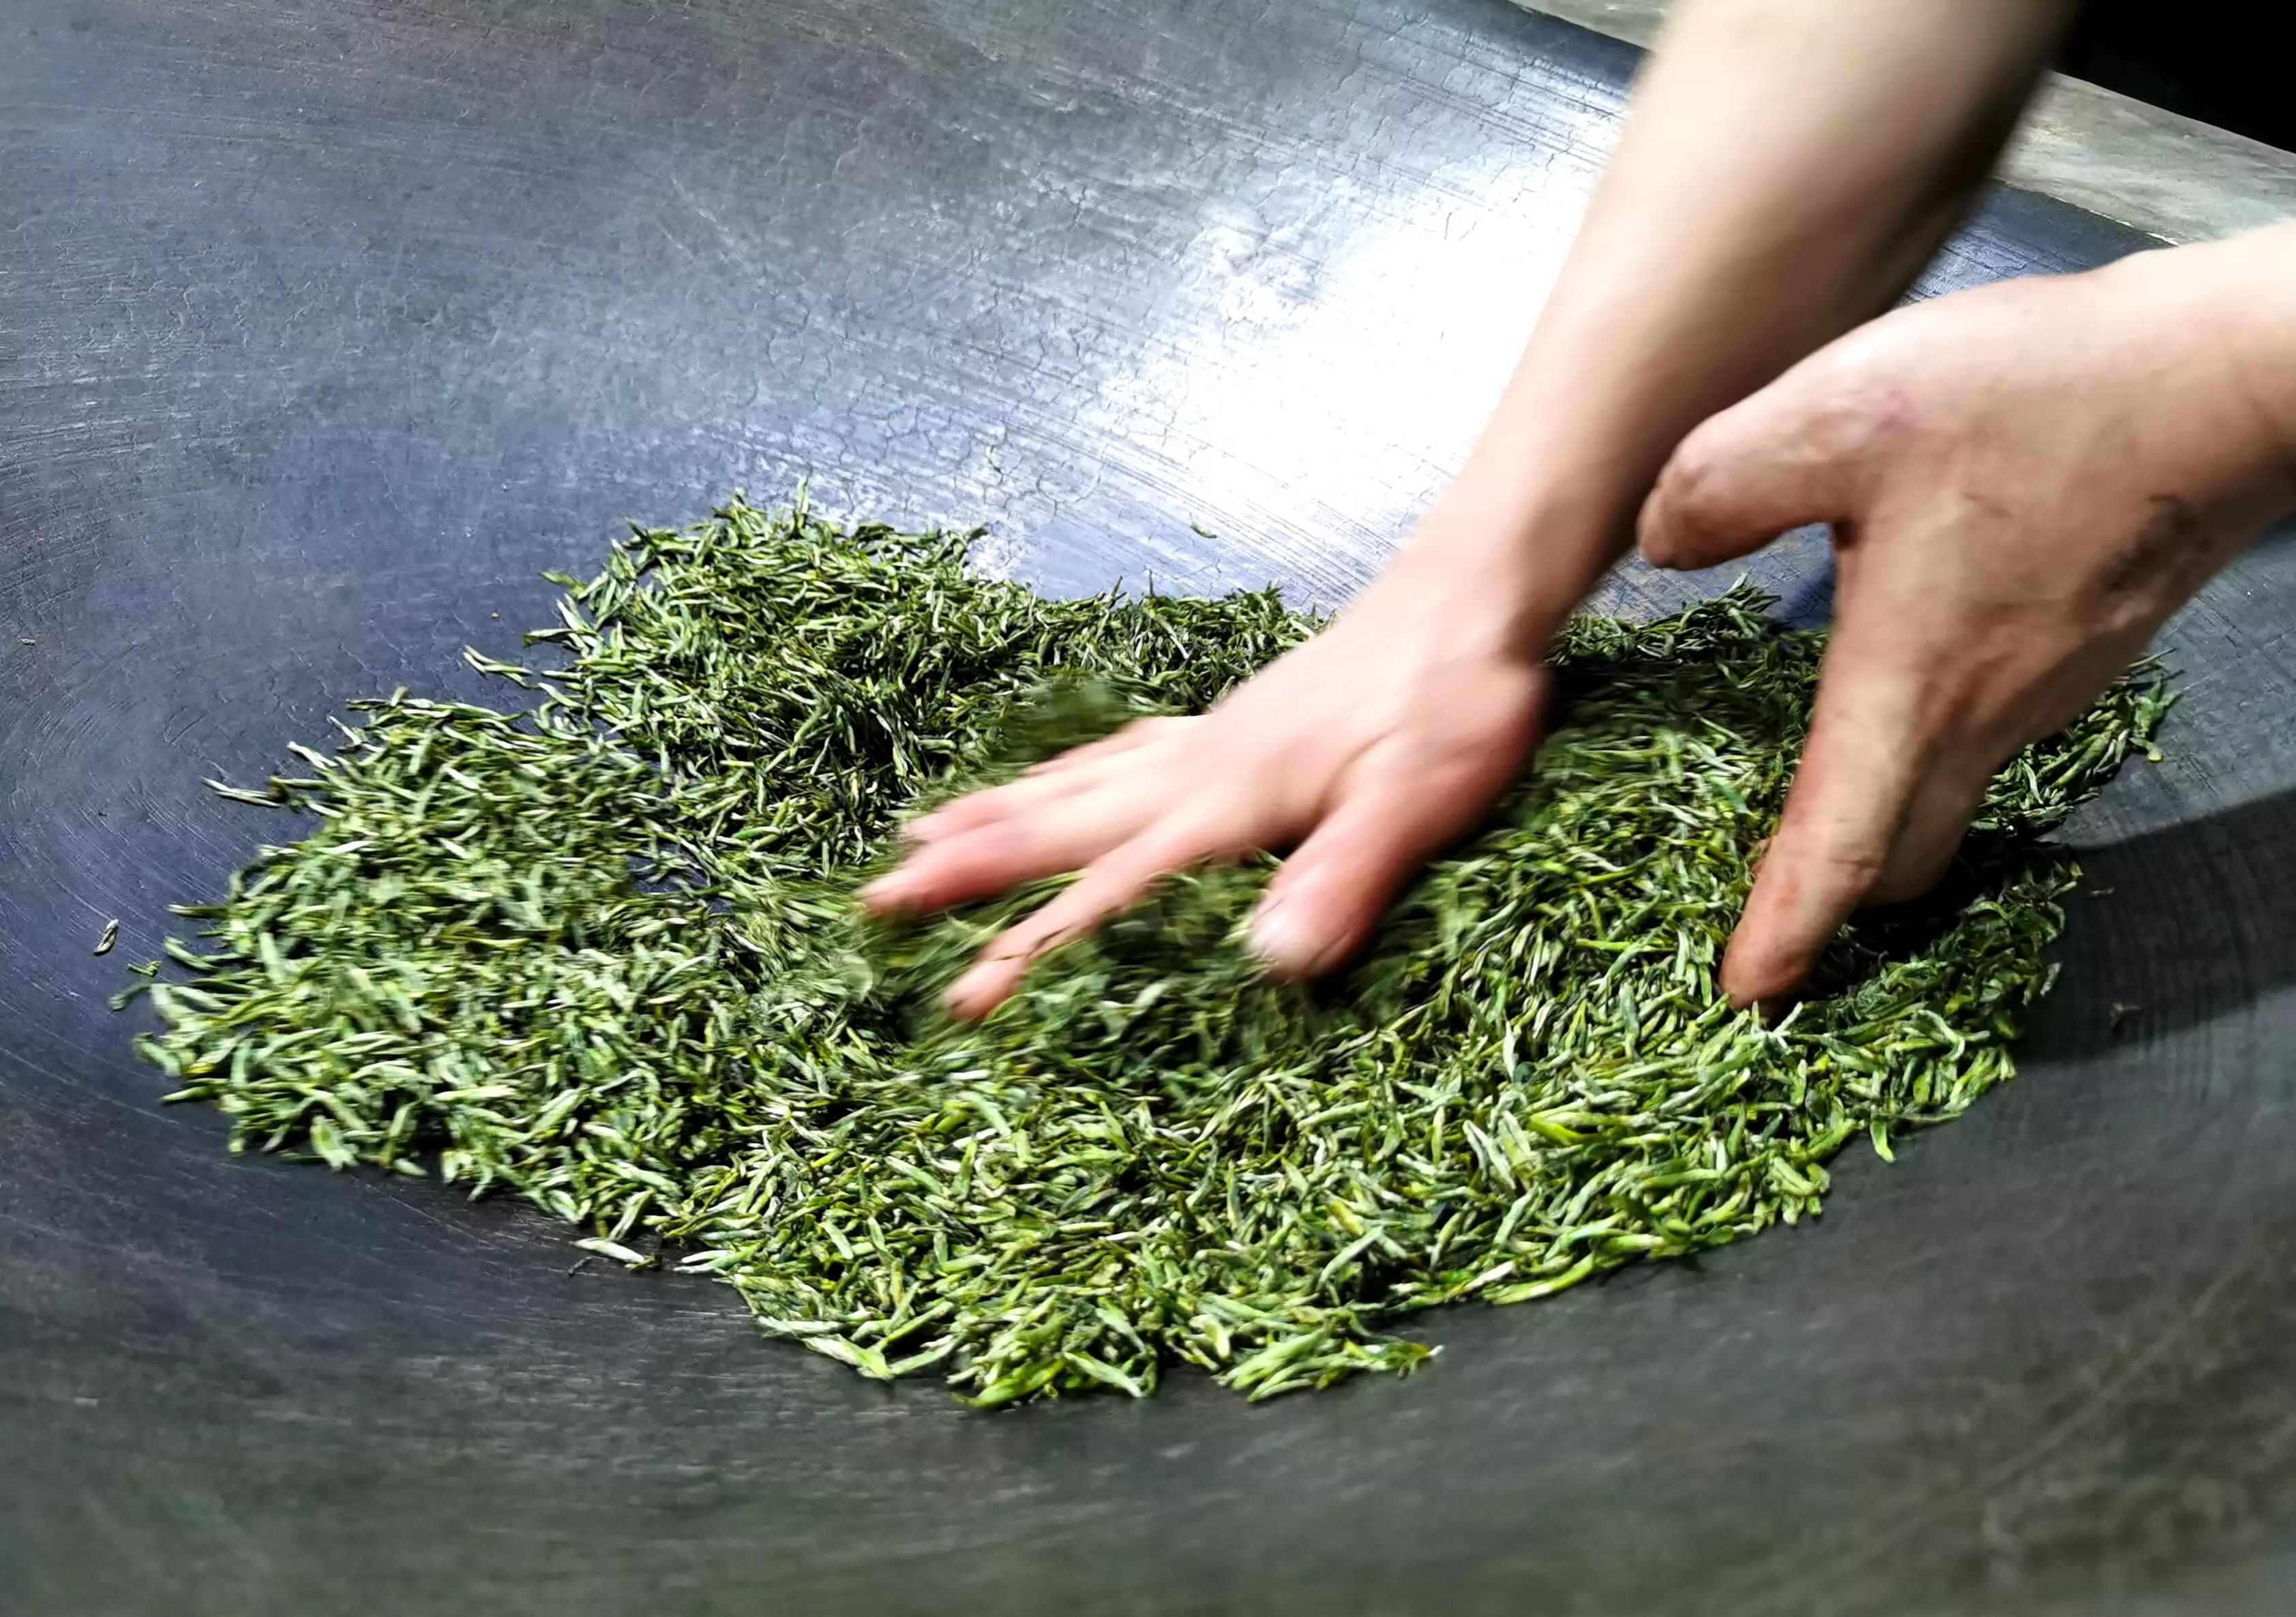 炒青绿茶的杀青方式使用滚筒或锅炒,我国大部分绿茶都是炒青绿茶,炒青